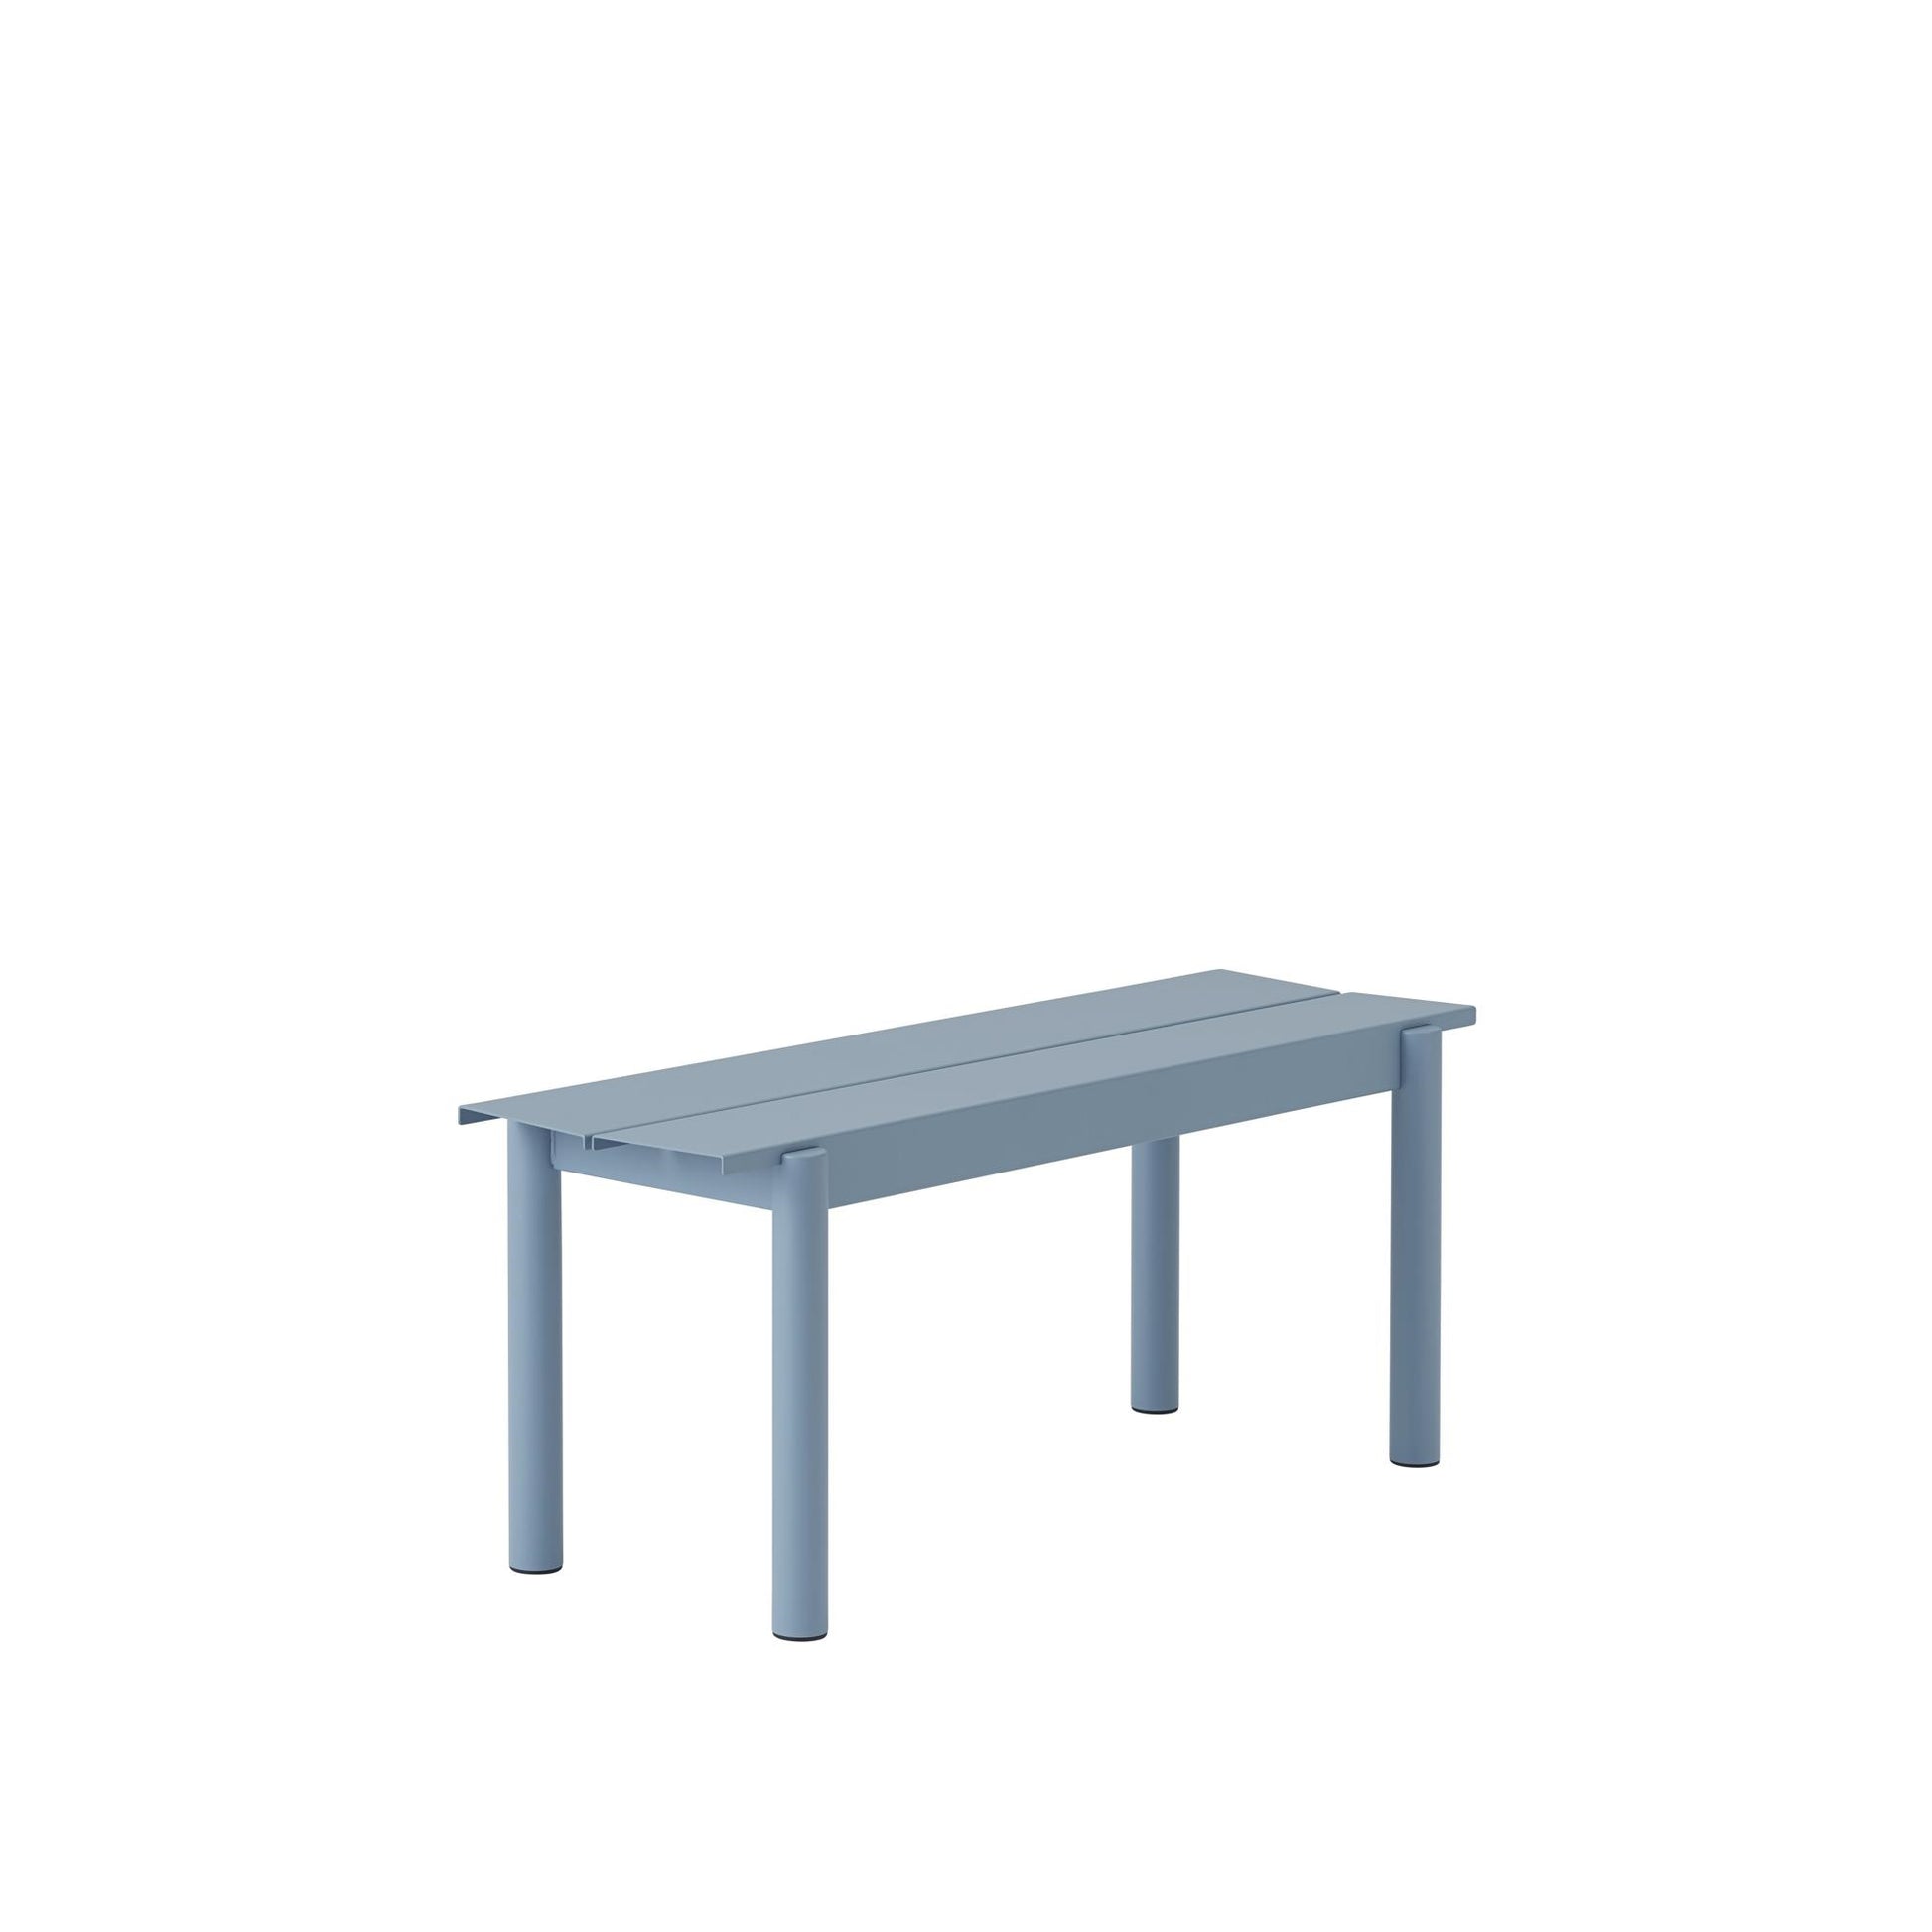 Linear Steel Bench 110 X 34 cm by Muuto #Pale Blue